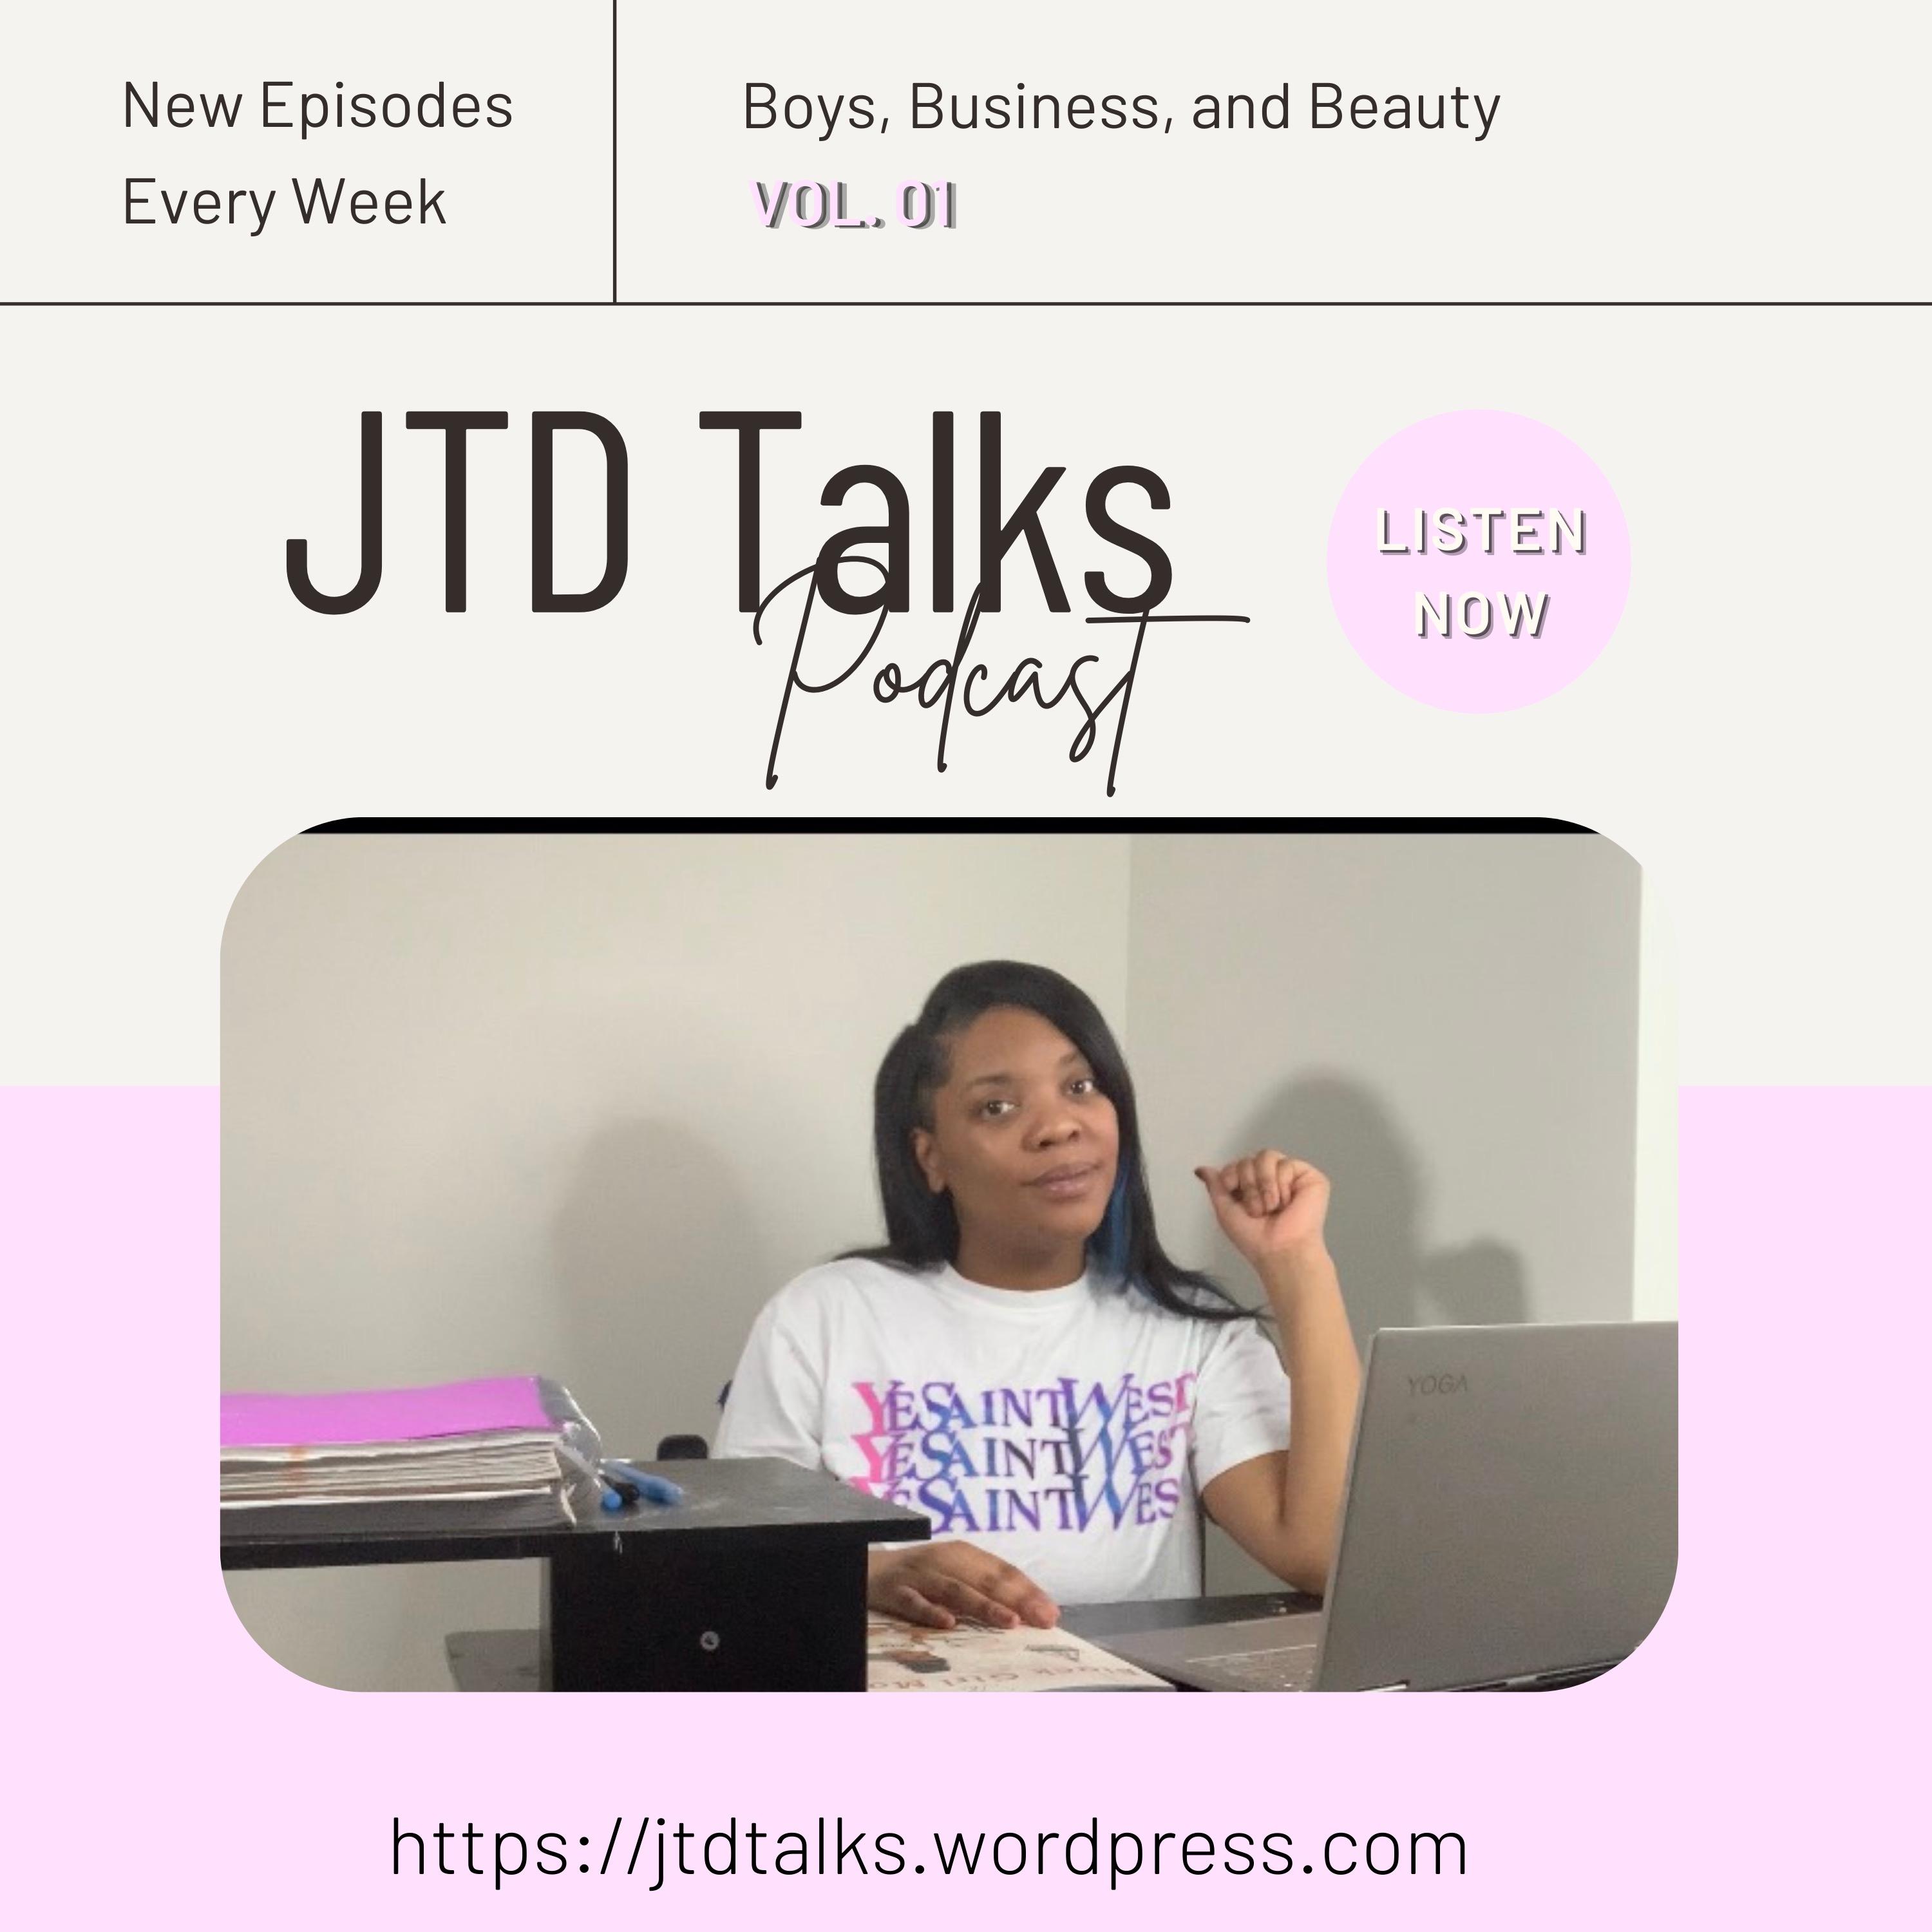 JTD Talks